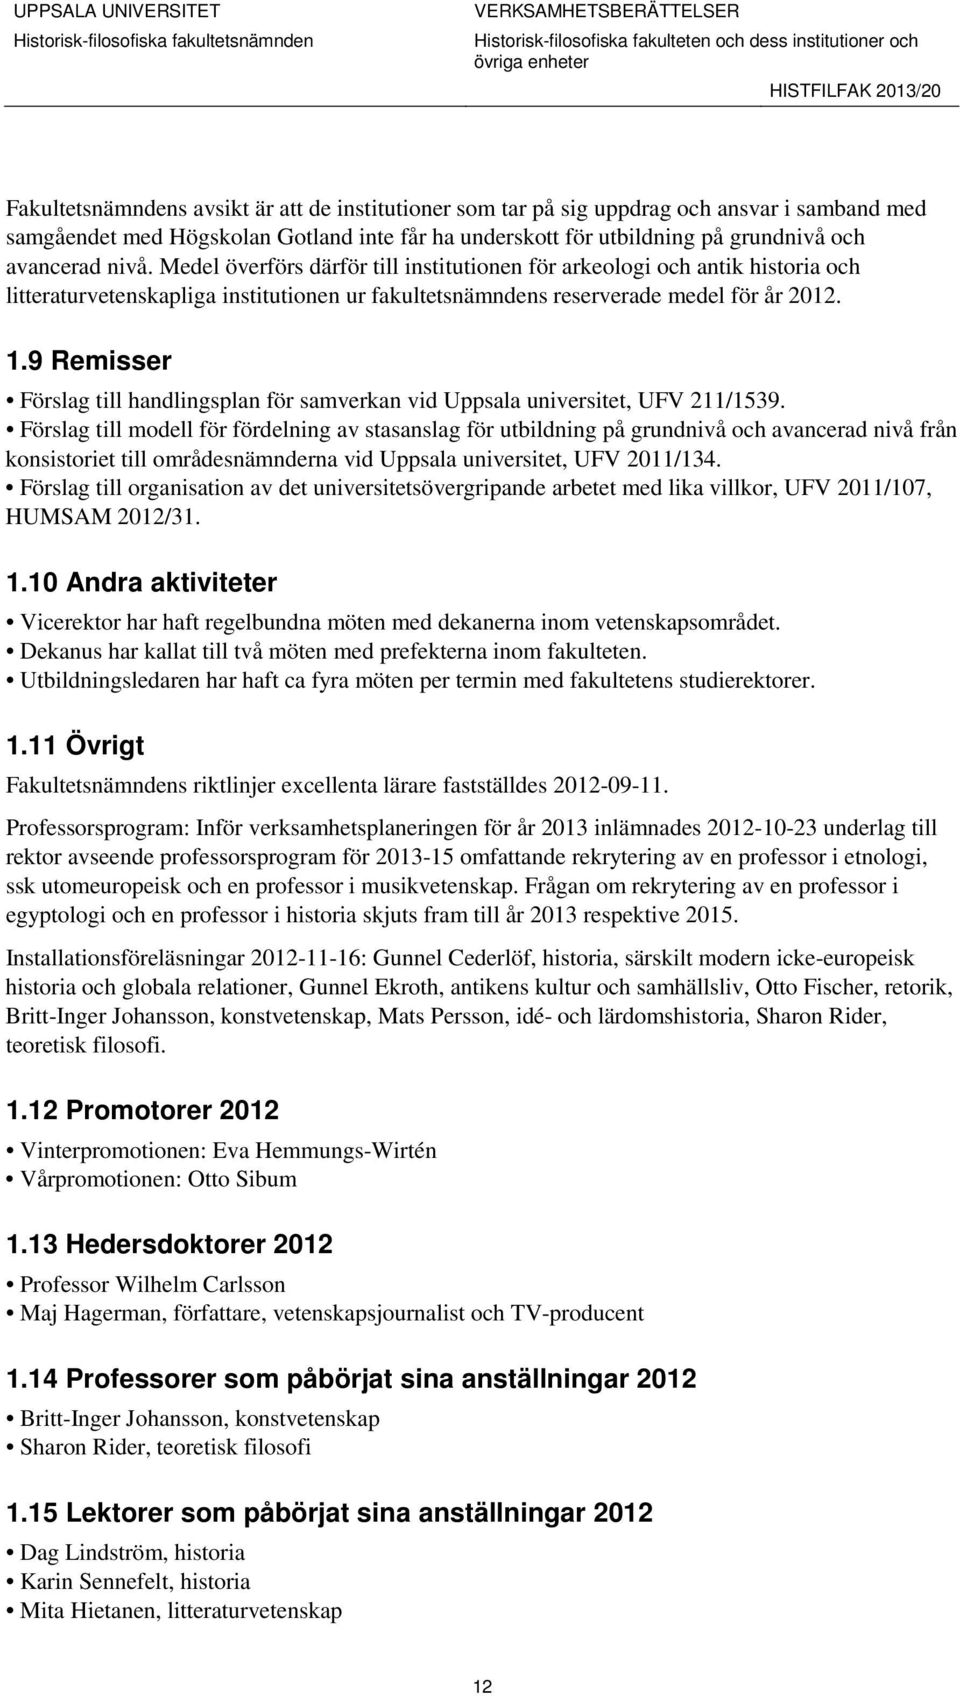 9 Remisser Förslag till handlingsplan för samverkan vid Uppsala universitet, UFV 211/1539.